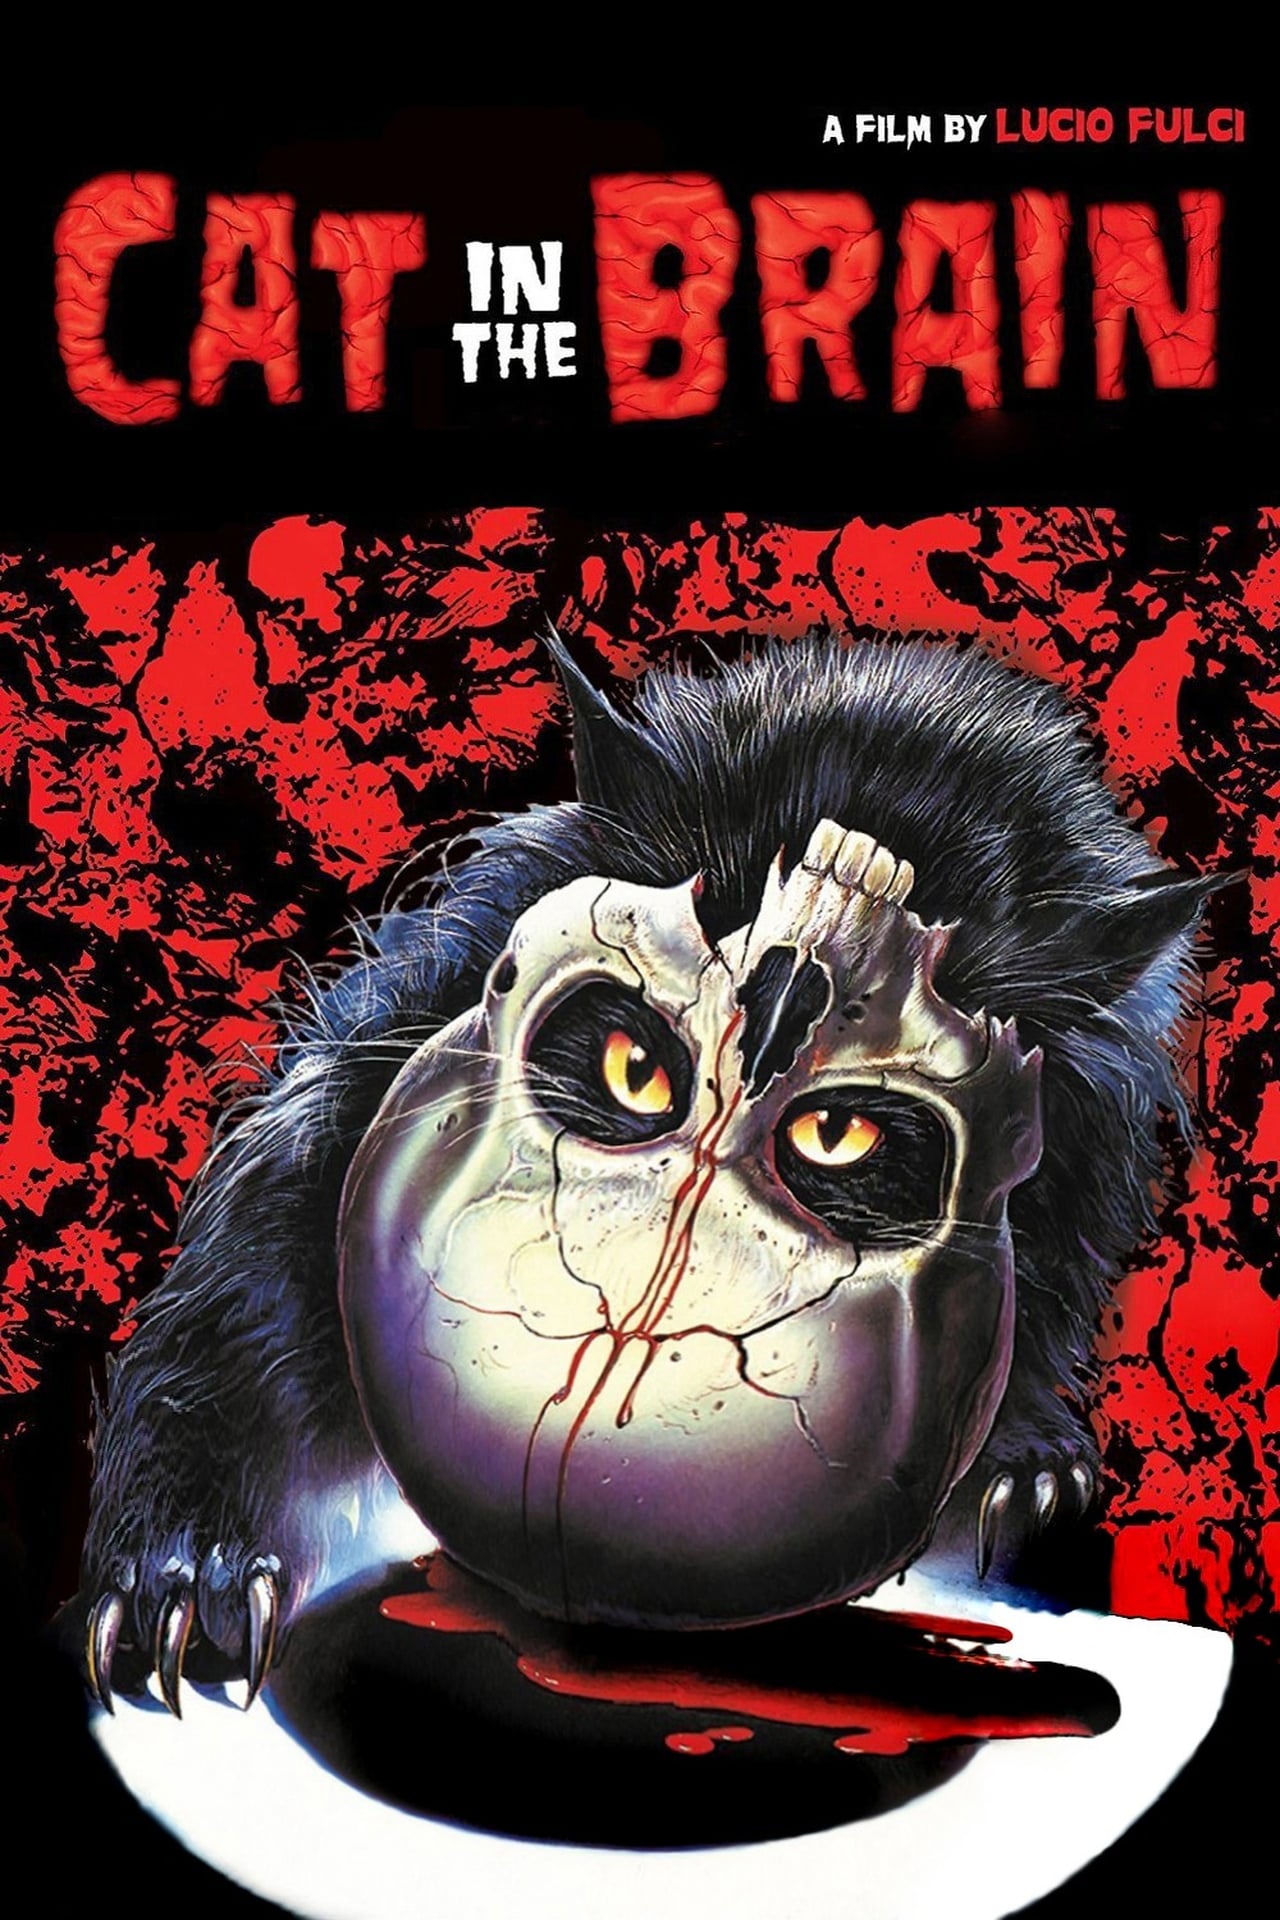 A Cat in the Brain (1990) Screenshot 1